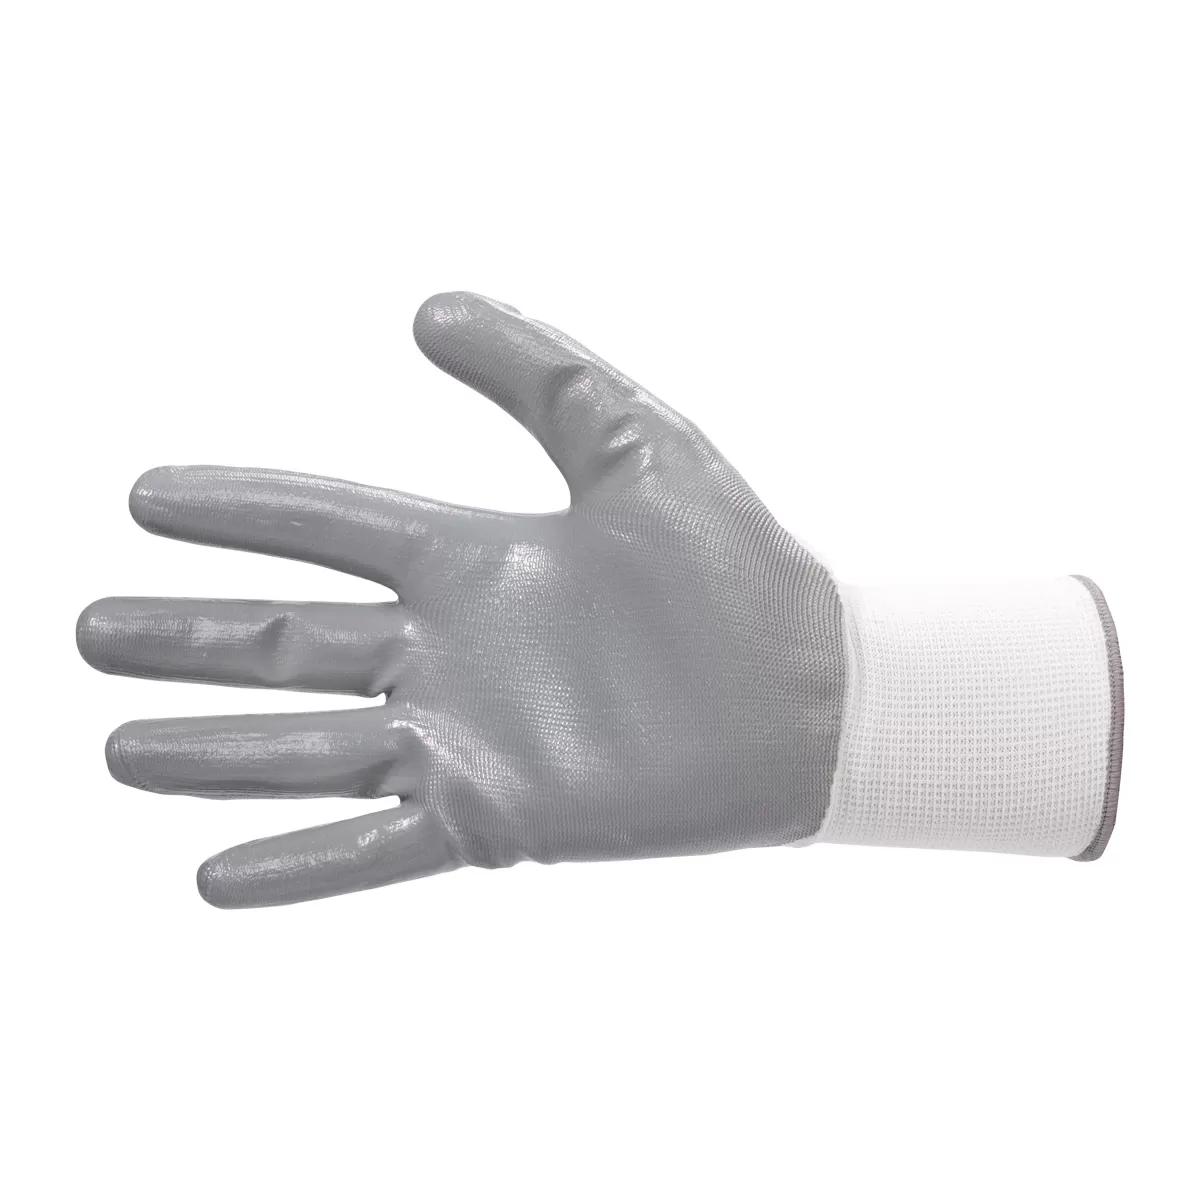 Triton-nitrile glove 